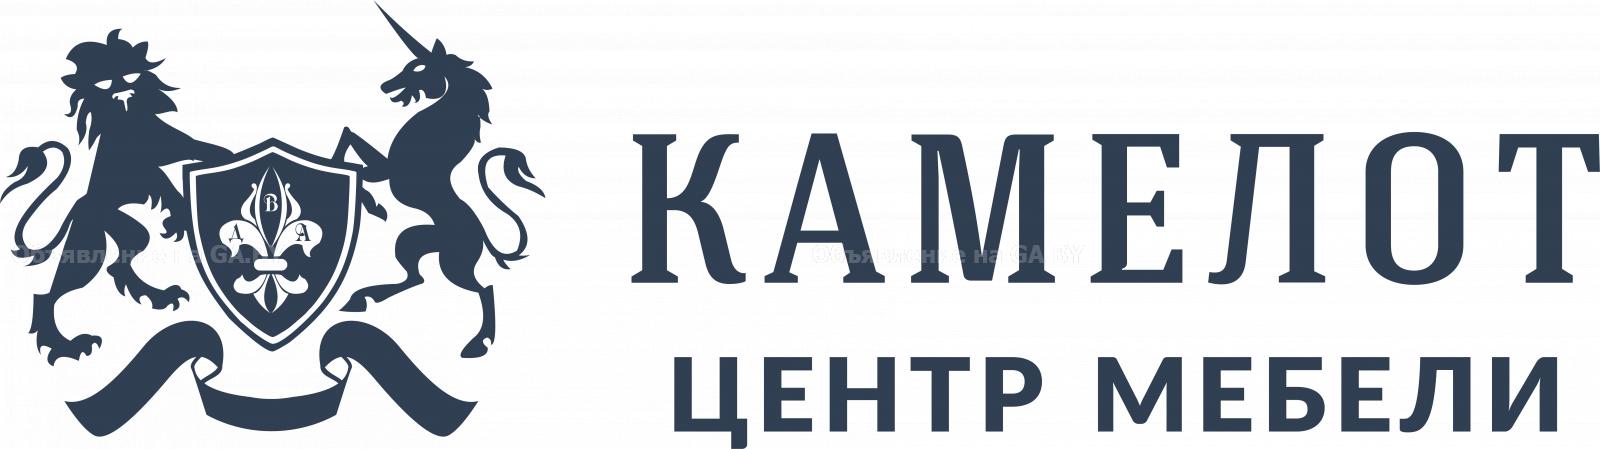 Продам ТЦ КАМЕЛОТ - GA.BY